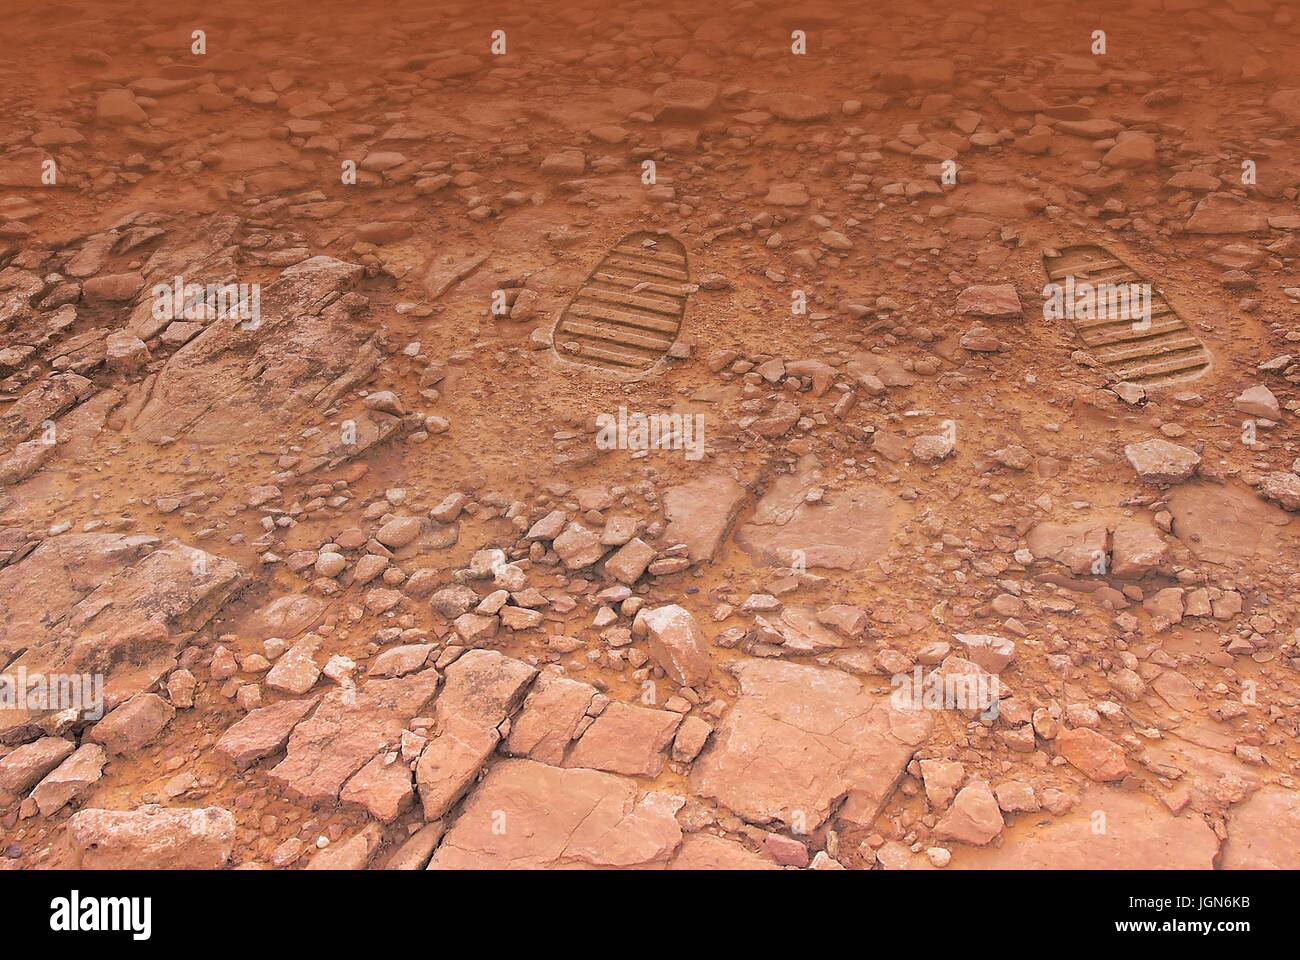 Fußabdrücke auf dem Mars, Kunstwerk. Eine Abbildung eines Paares von Boot druckt auf der Oberfläche des roten Planeten, vielleicht hinter sich gelassen durch zukünftige Astronauten â €"oder Touristen. Eine menschliche Expedition zum Mars wäre teuer, gefährlich, aber lohnende Venture. Stockfoto